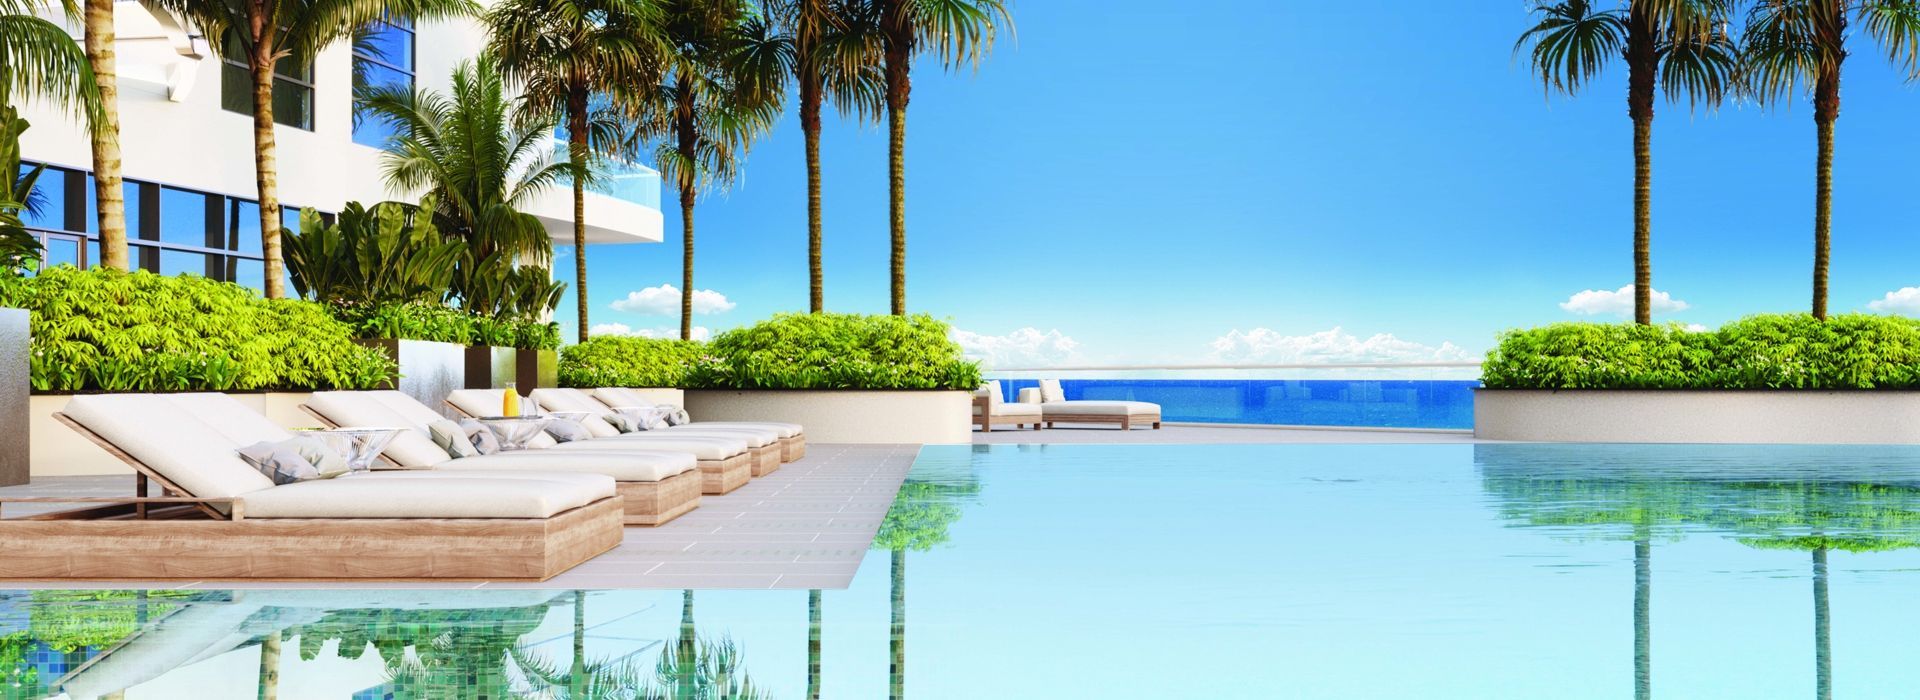 amrit-ocean-resort-pool.jpg